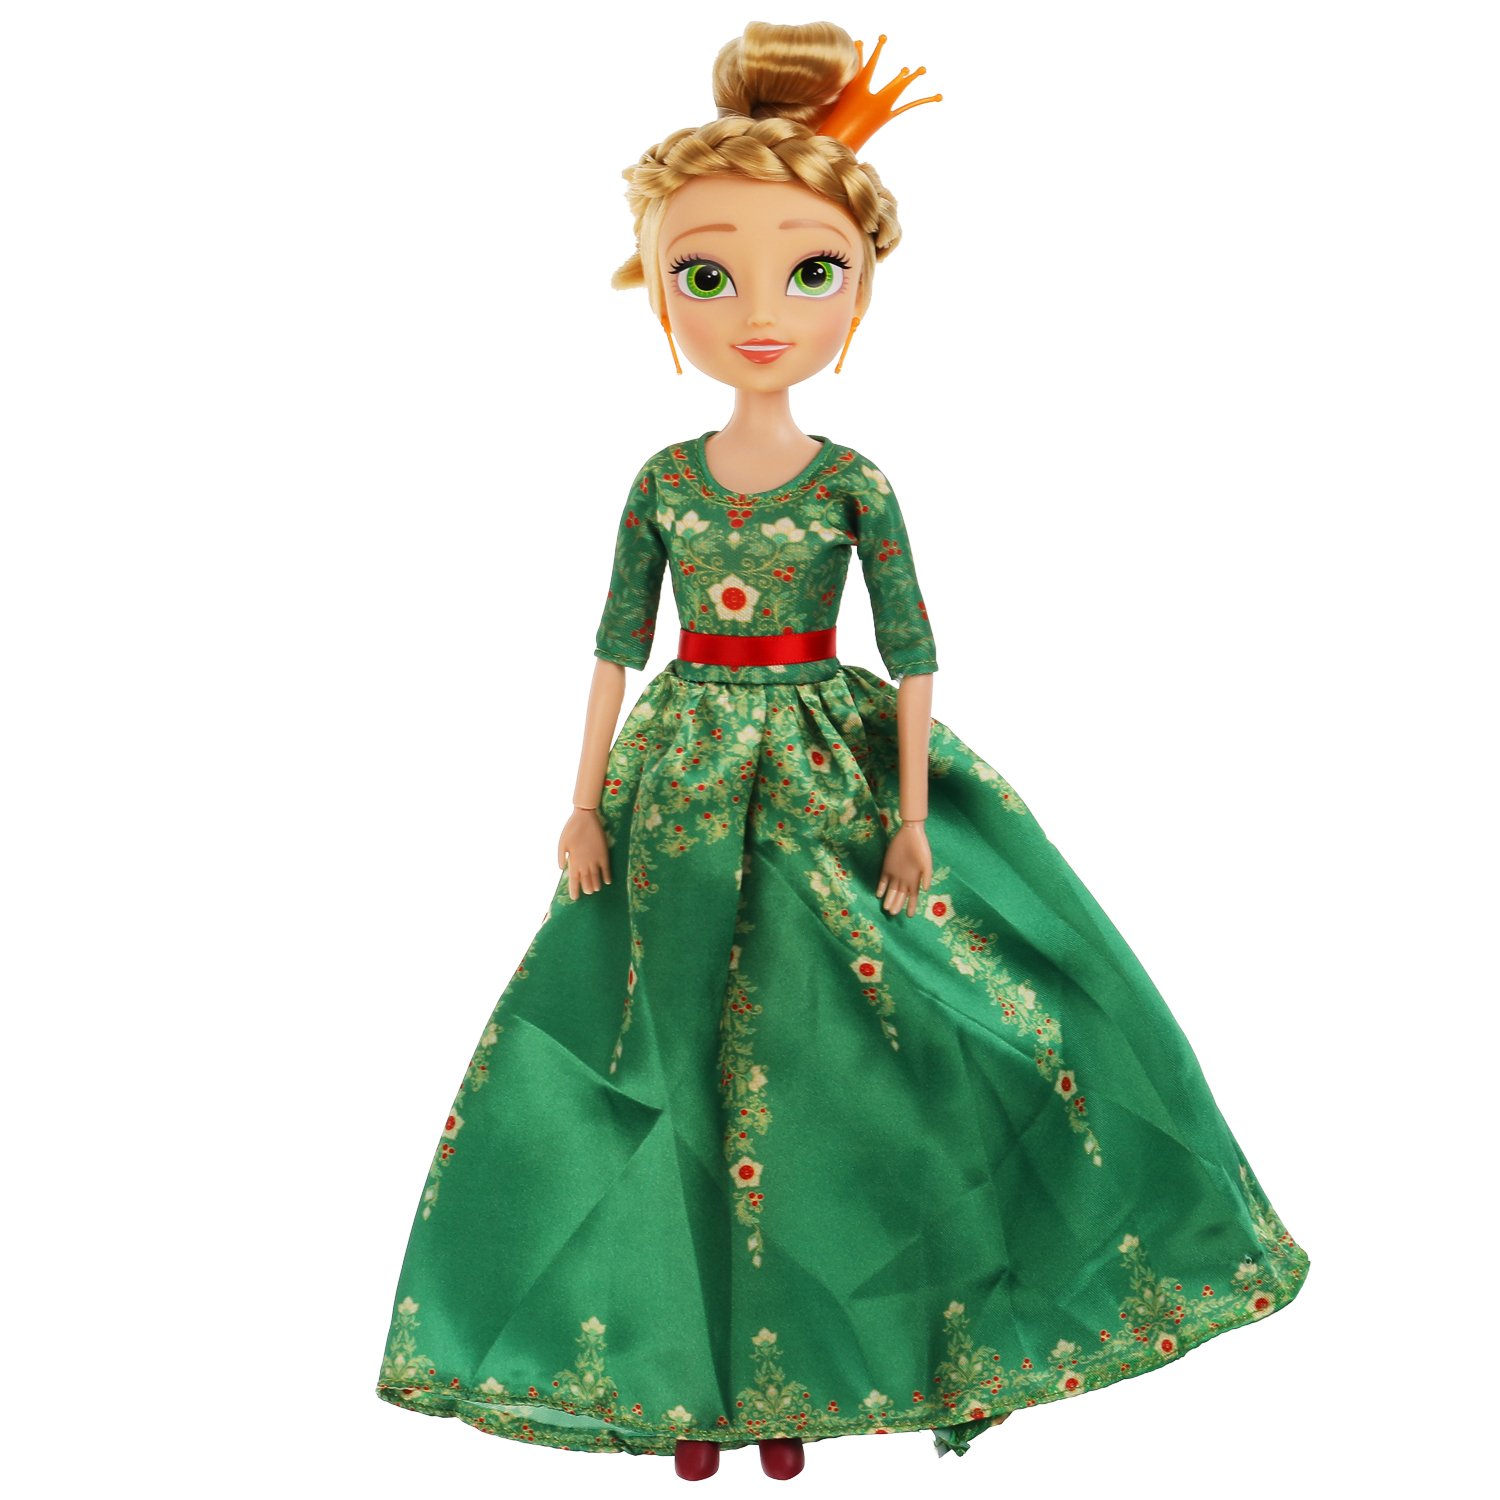 Кукла 29 см Царевны Василиса , в бальном платье, акс, блистер КАРАПУЗ в кор.24шт (Вид 1)